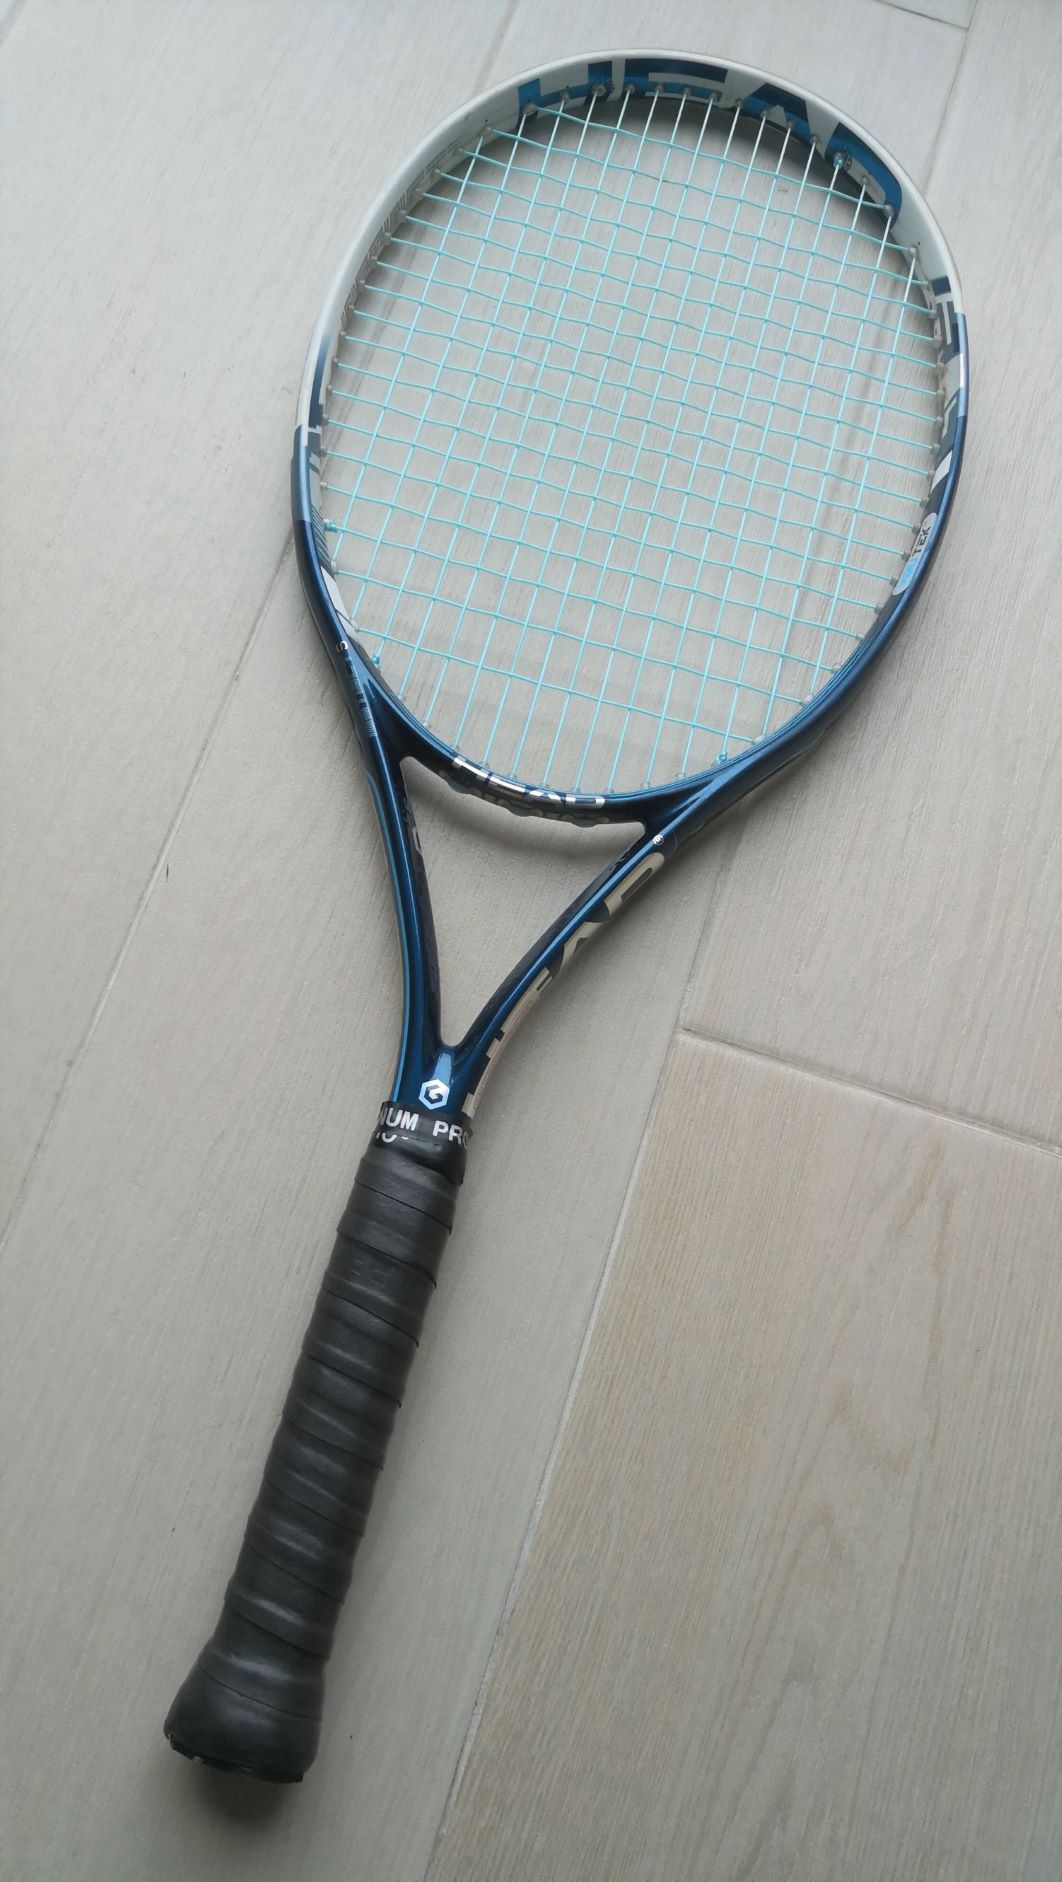 Reg $200 Warranty 4 5/8 HEAD YOUTEK IG INSTINCT S tennis racquet racket 